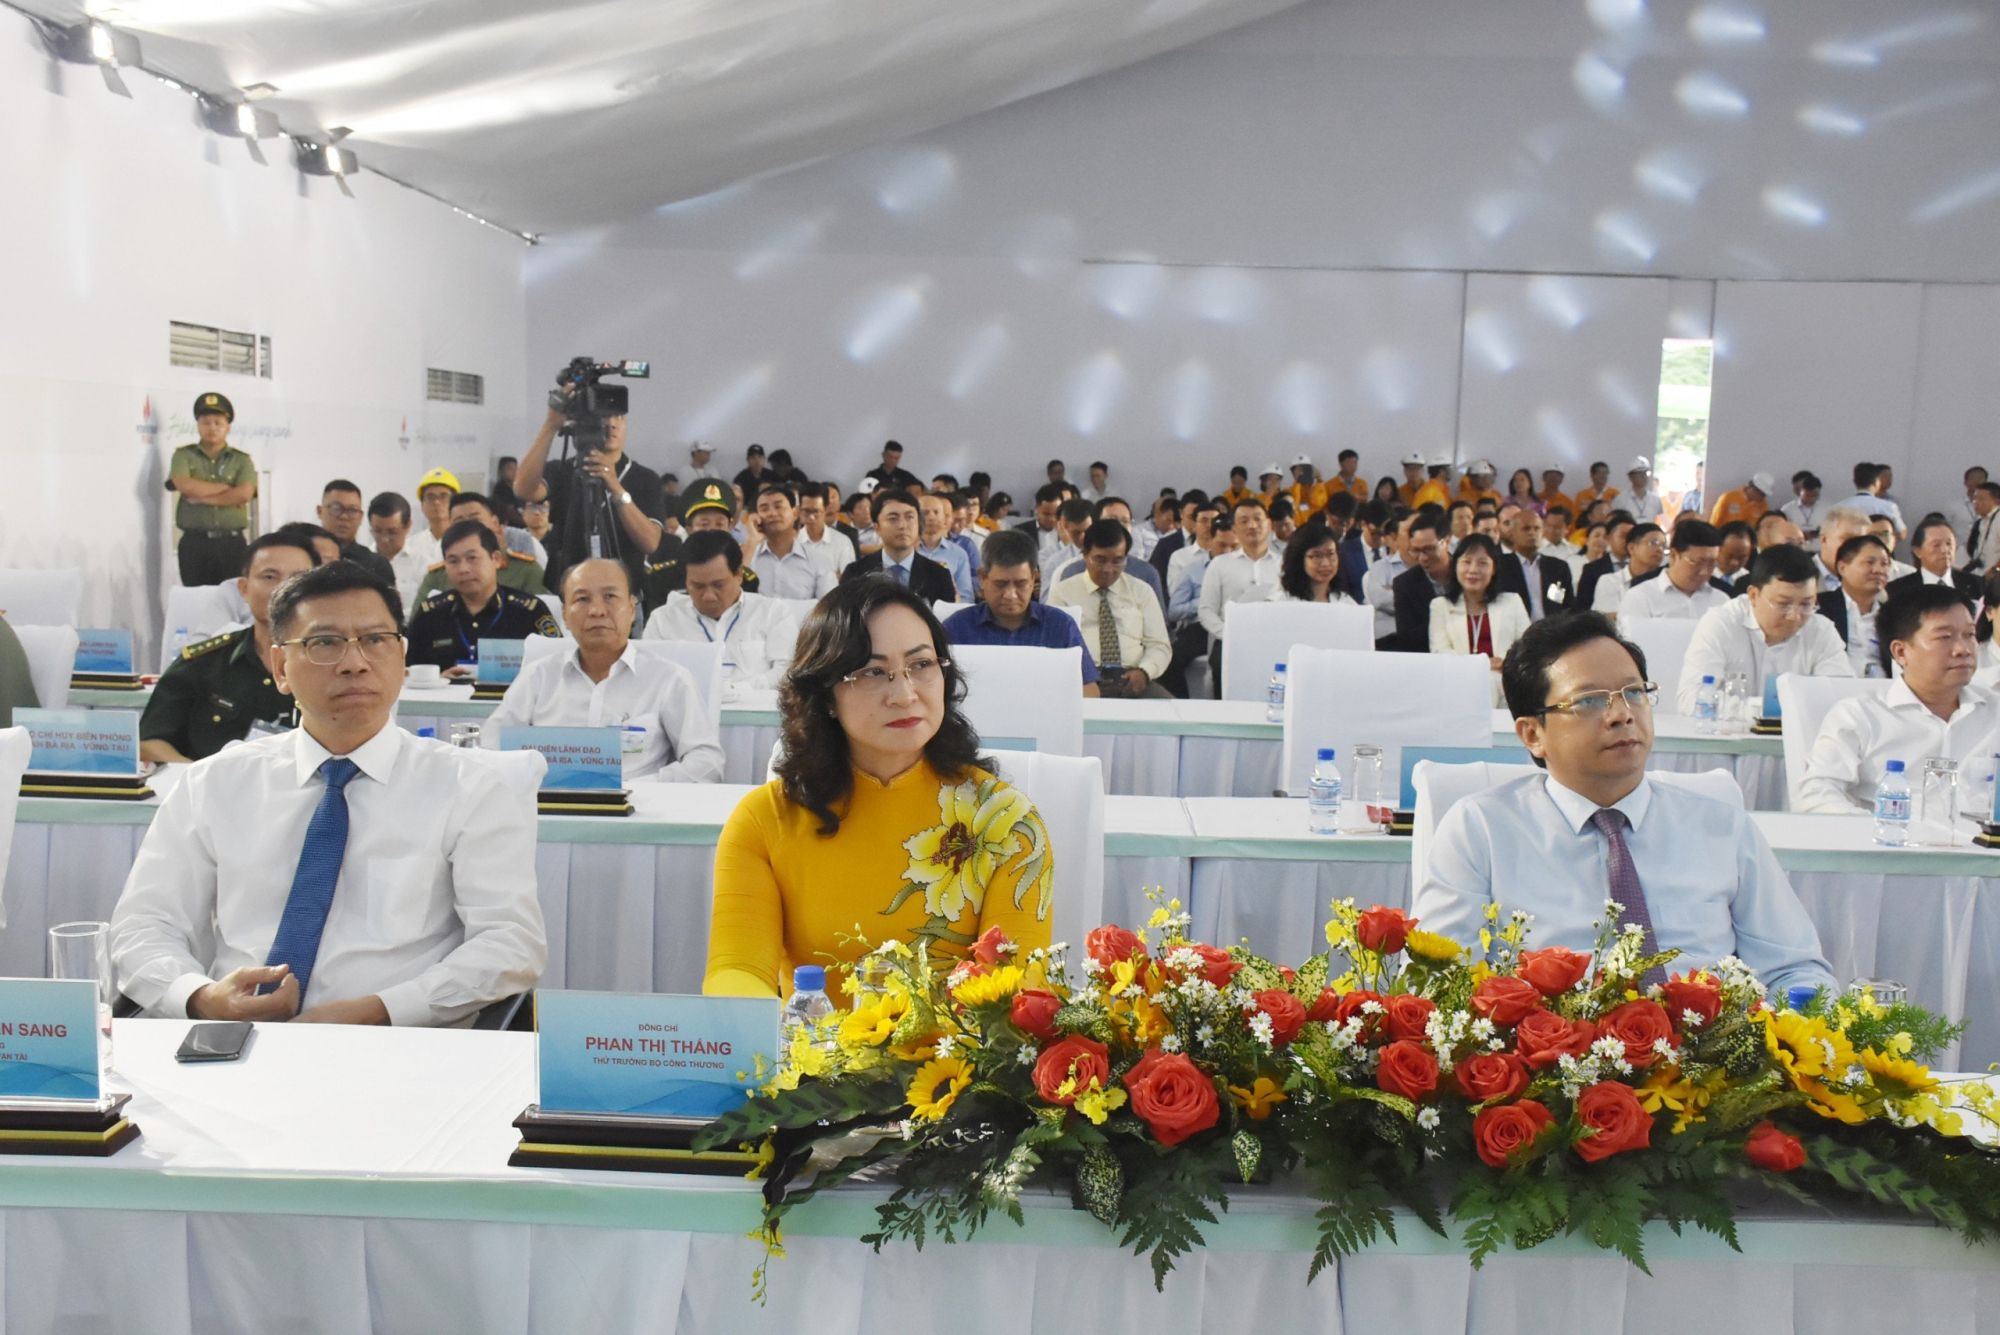 Bà Phan Thị Thắng, Thứ trưởng Bộ Công thương cùng lãnh đạo các bộ, ngành tham dự tại sự kiện.